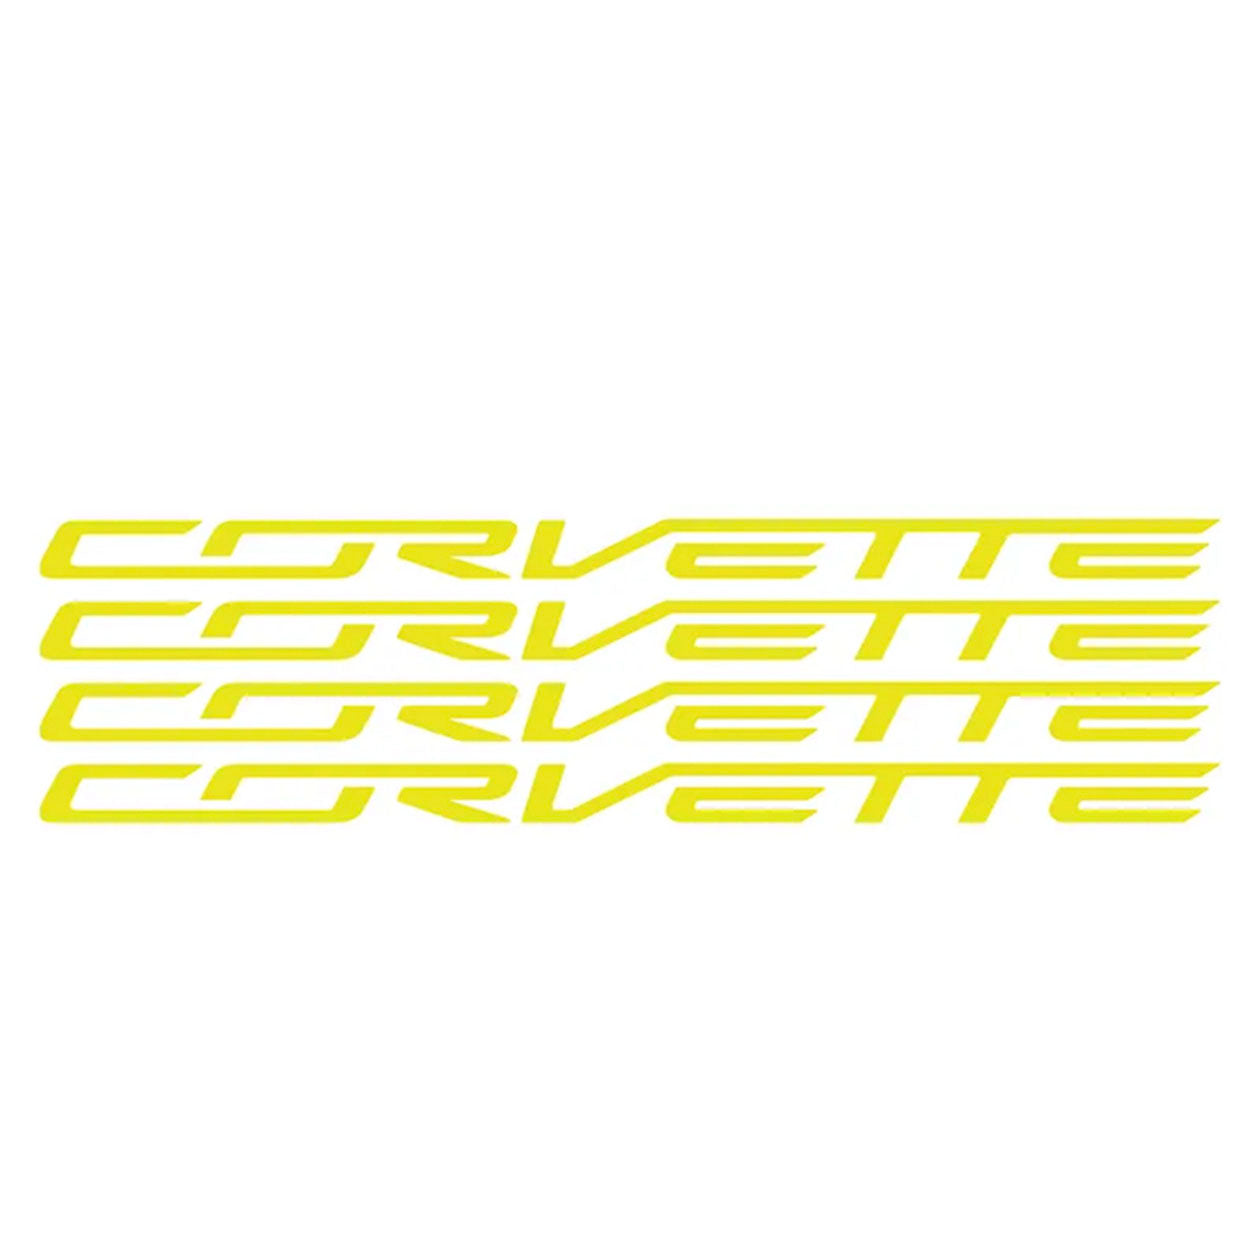 C6/C7 Wheel Lettering Kit - Corvette Script for 4 Wheels